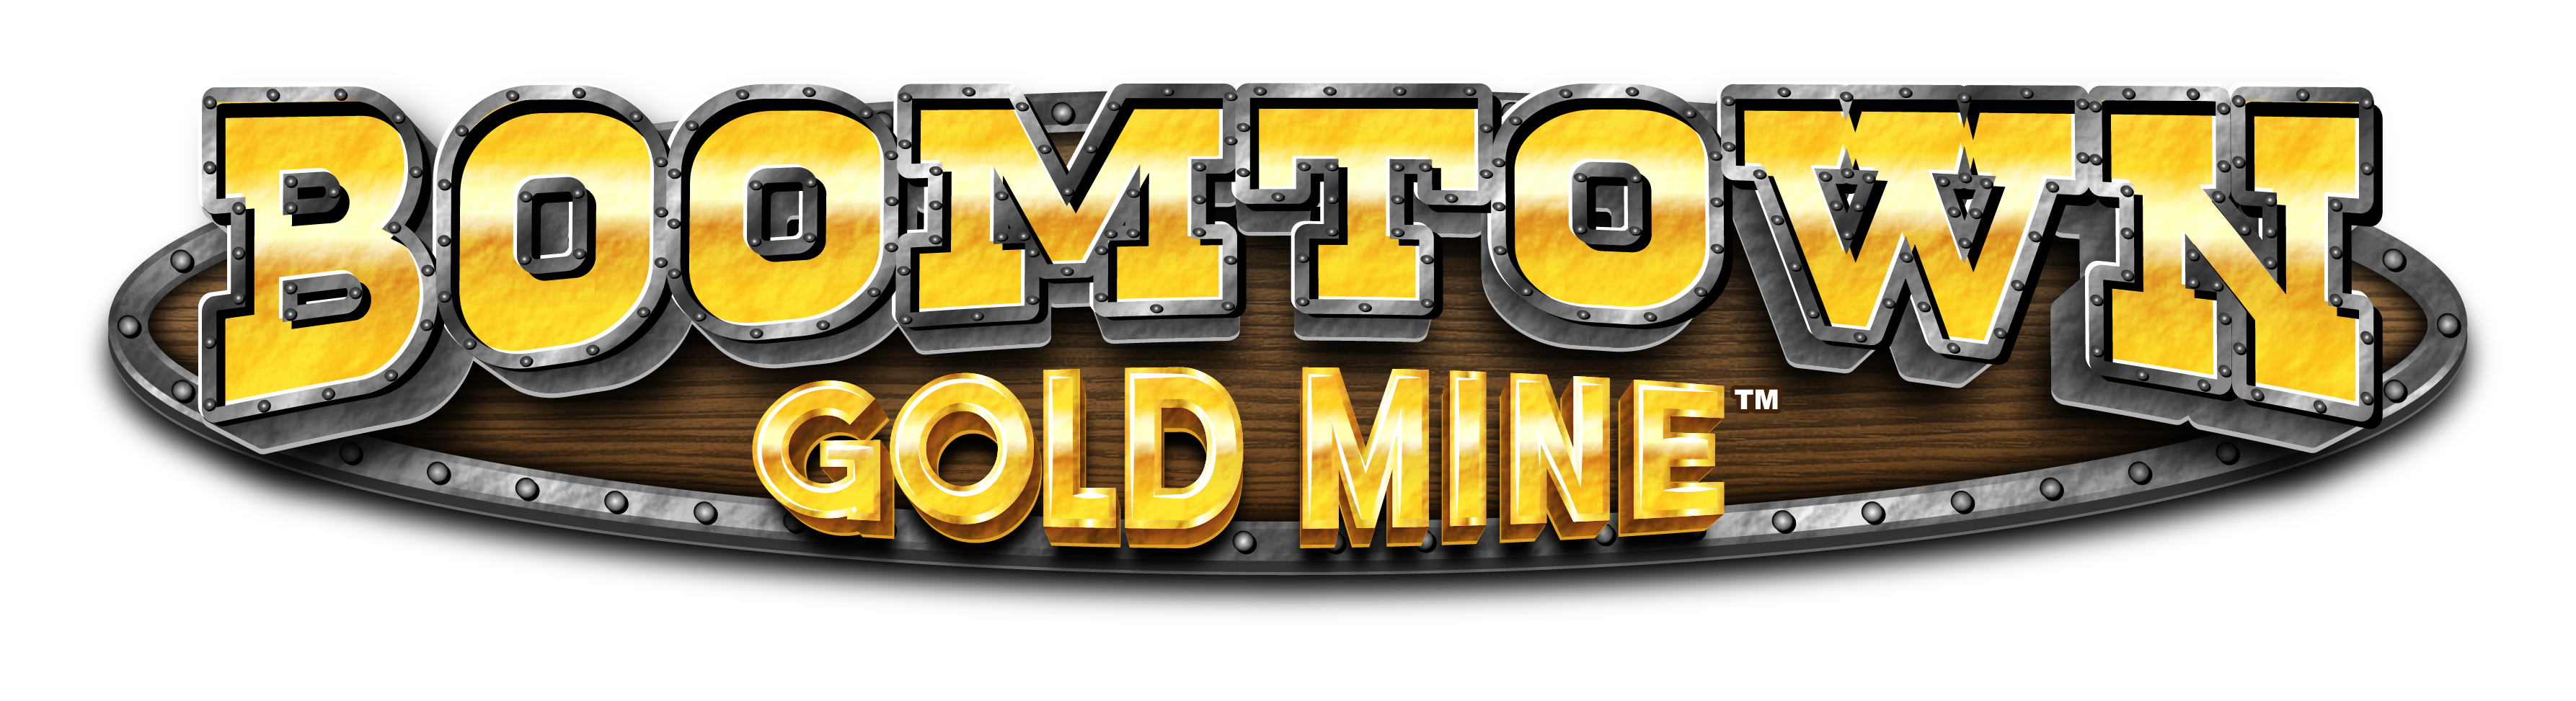 Boomtown Gold Mine